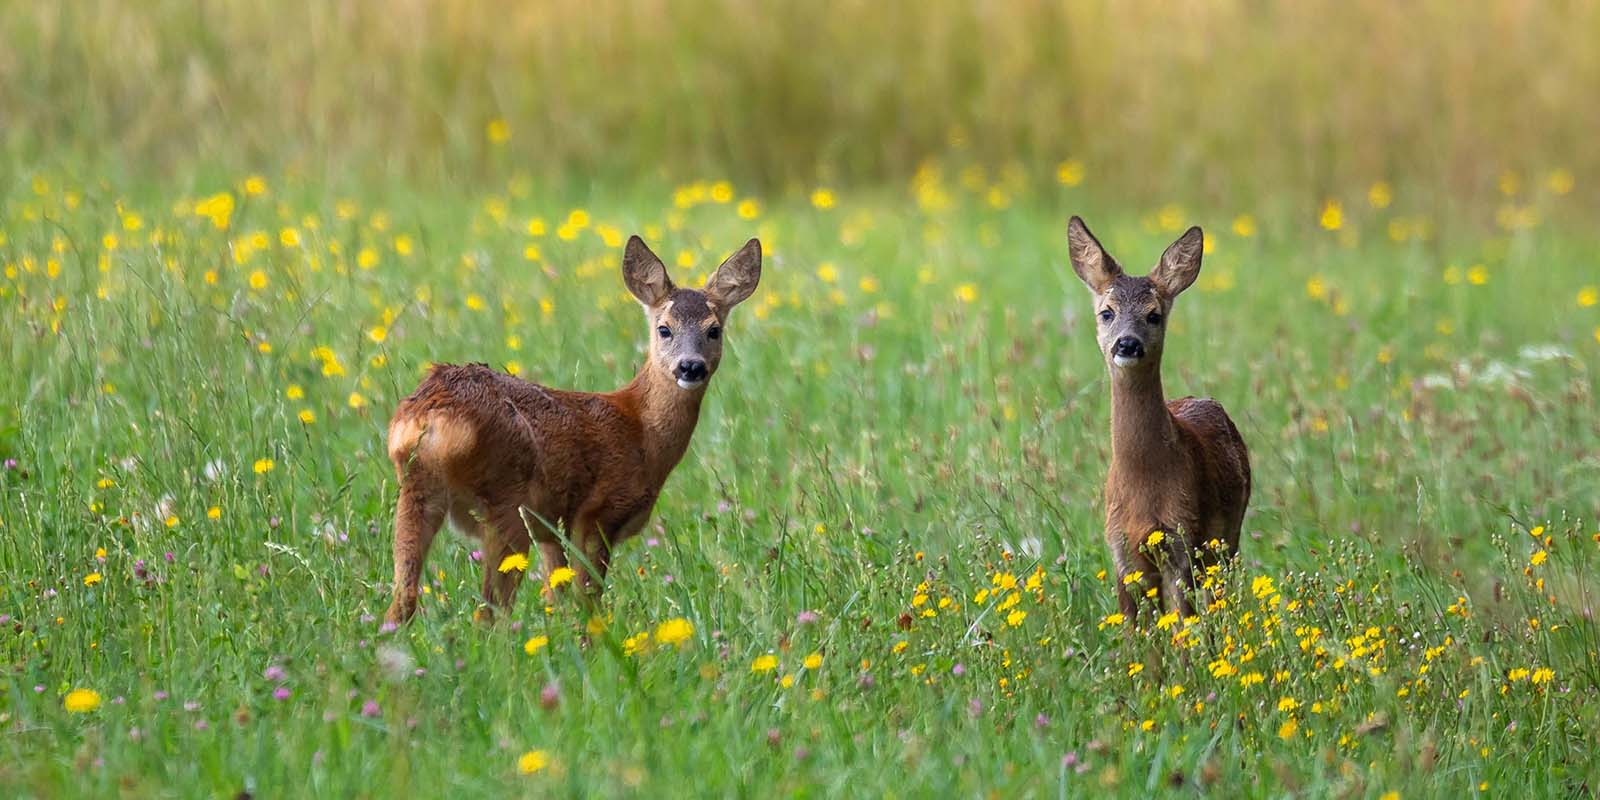 Two deer in a meadow